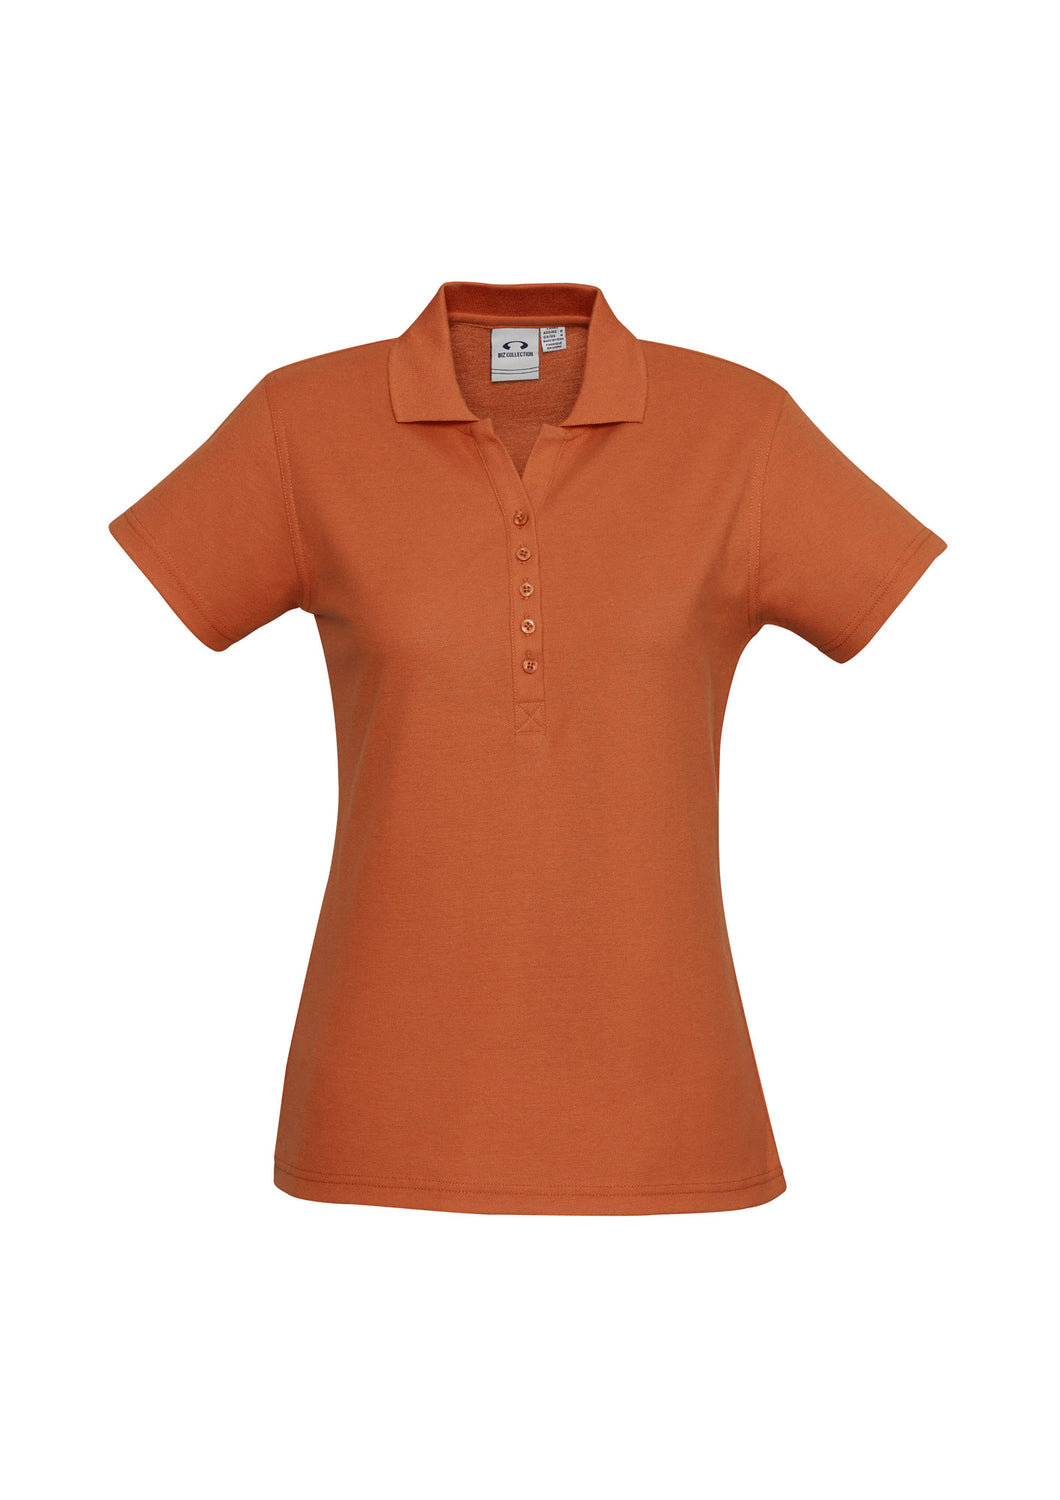 Ladies Classic Pique Knit Polo - Orange